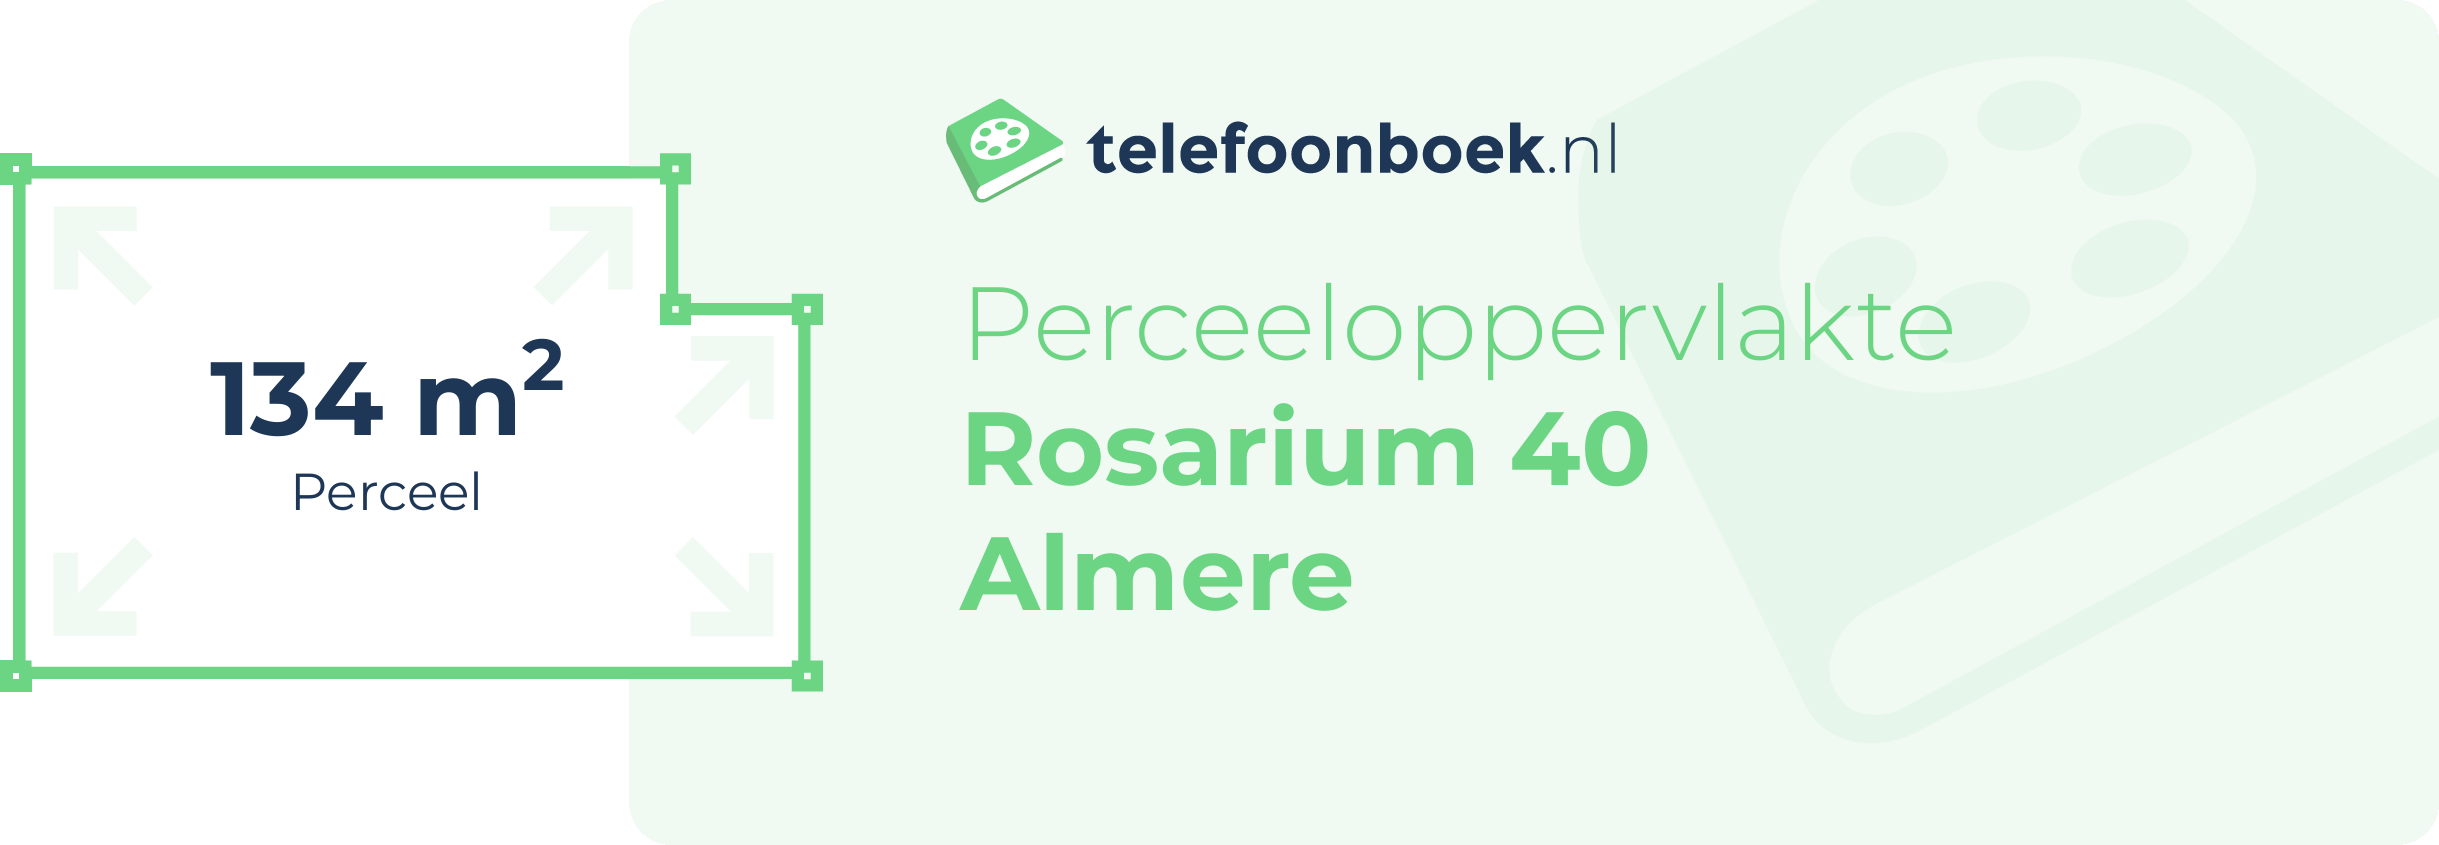 Perceeloppervlakte Rosarium 40 Almere